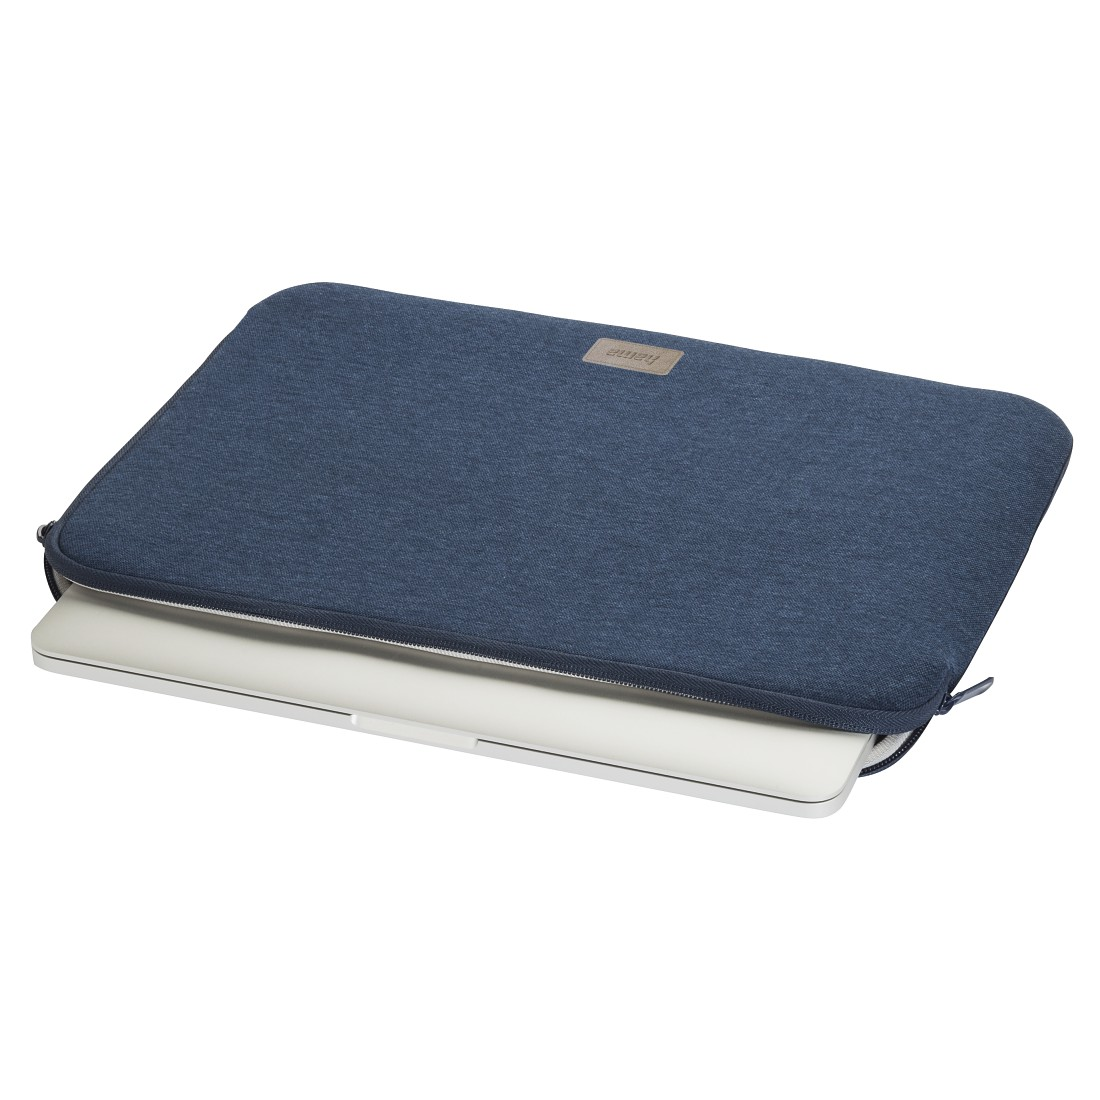 HAMA Jersey 15.6 Zoll Notebooktasche Sleeve Universal Blau Jersey, für